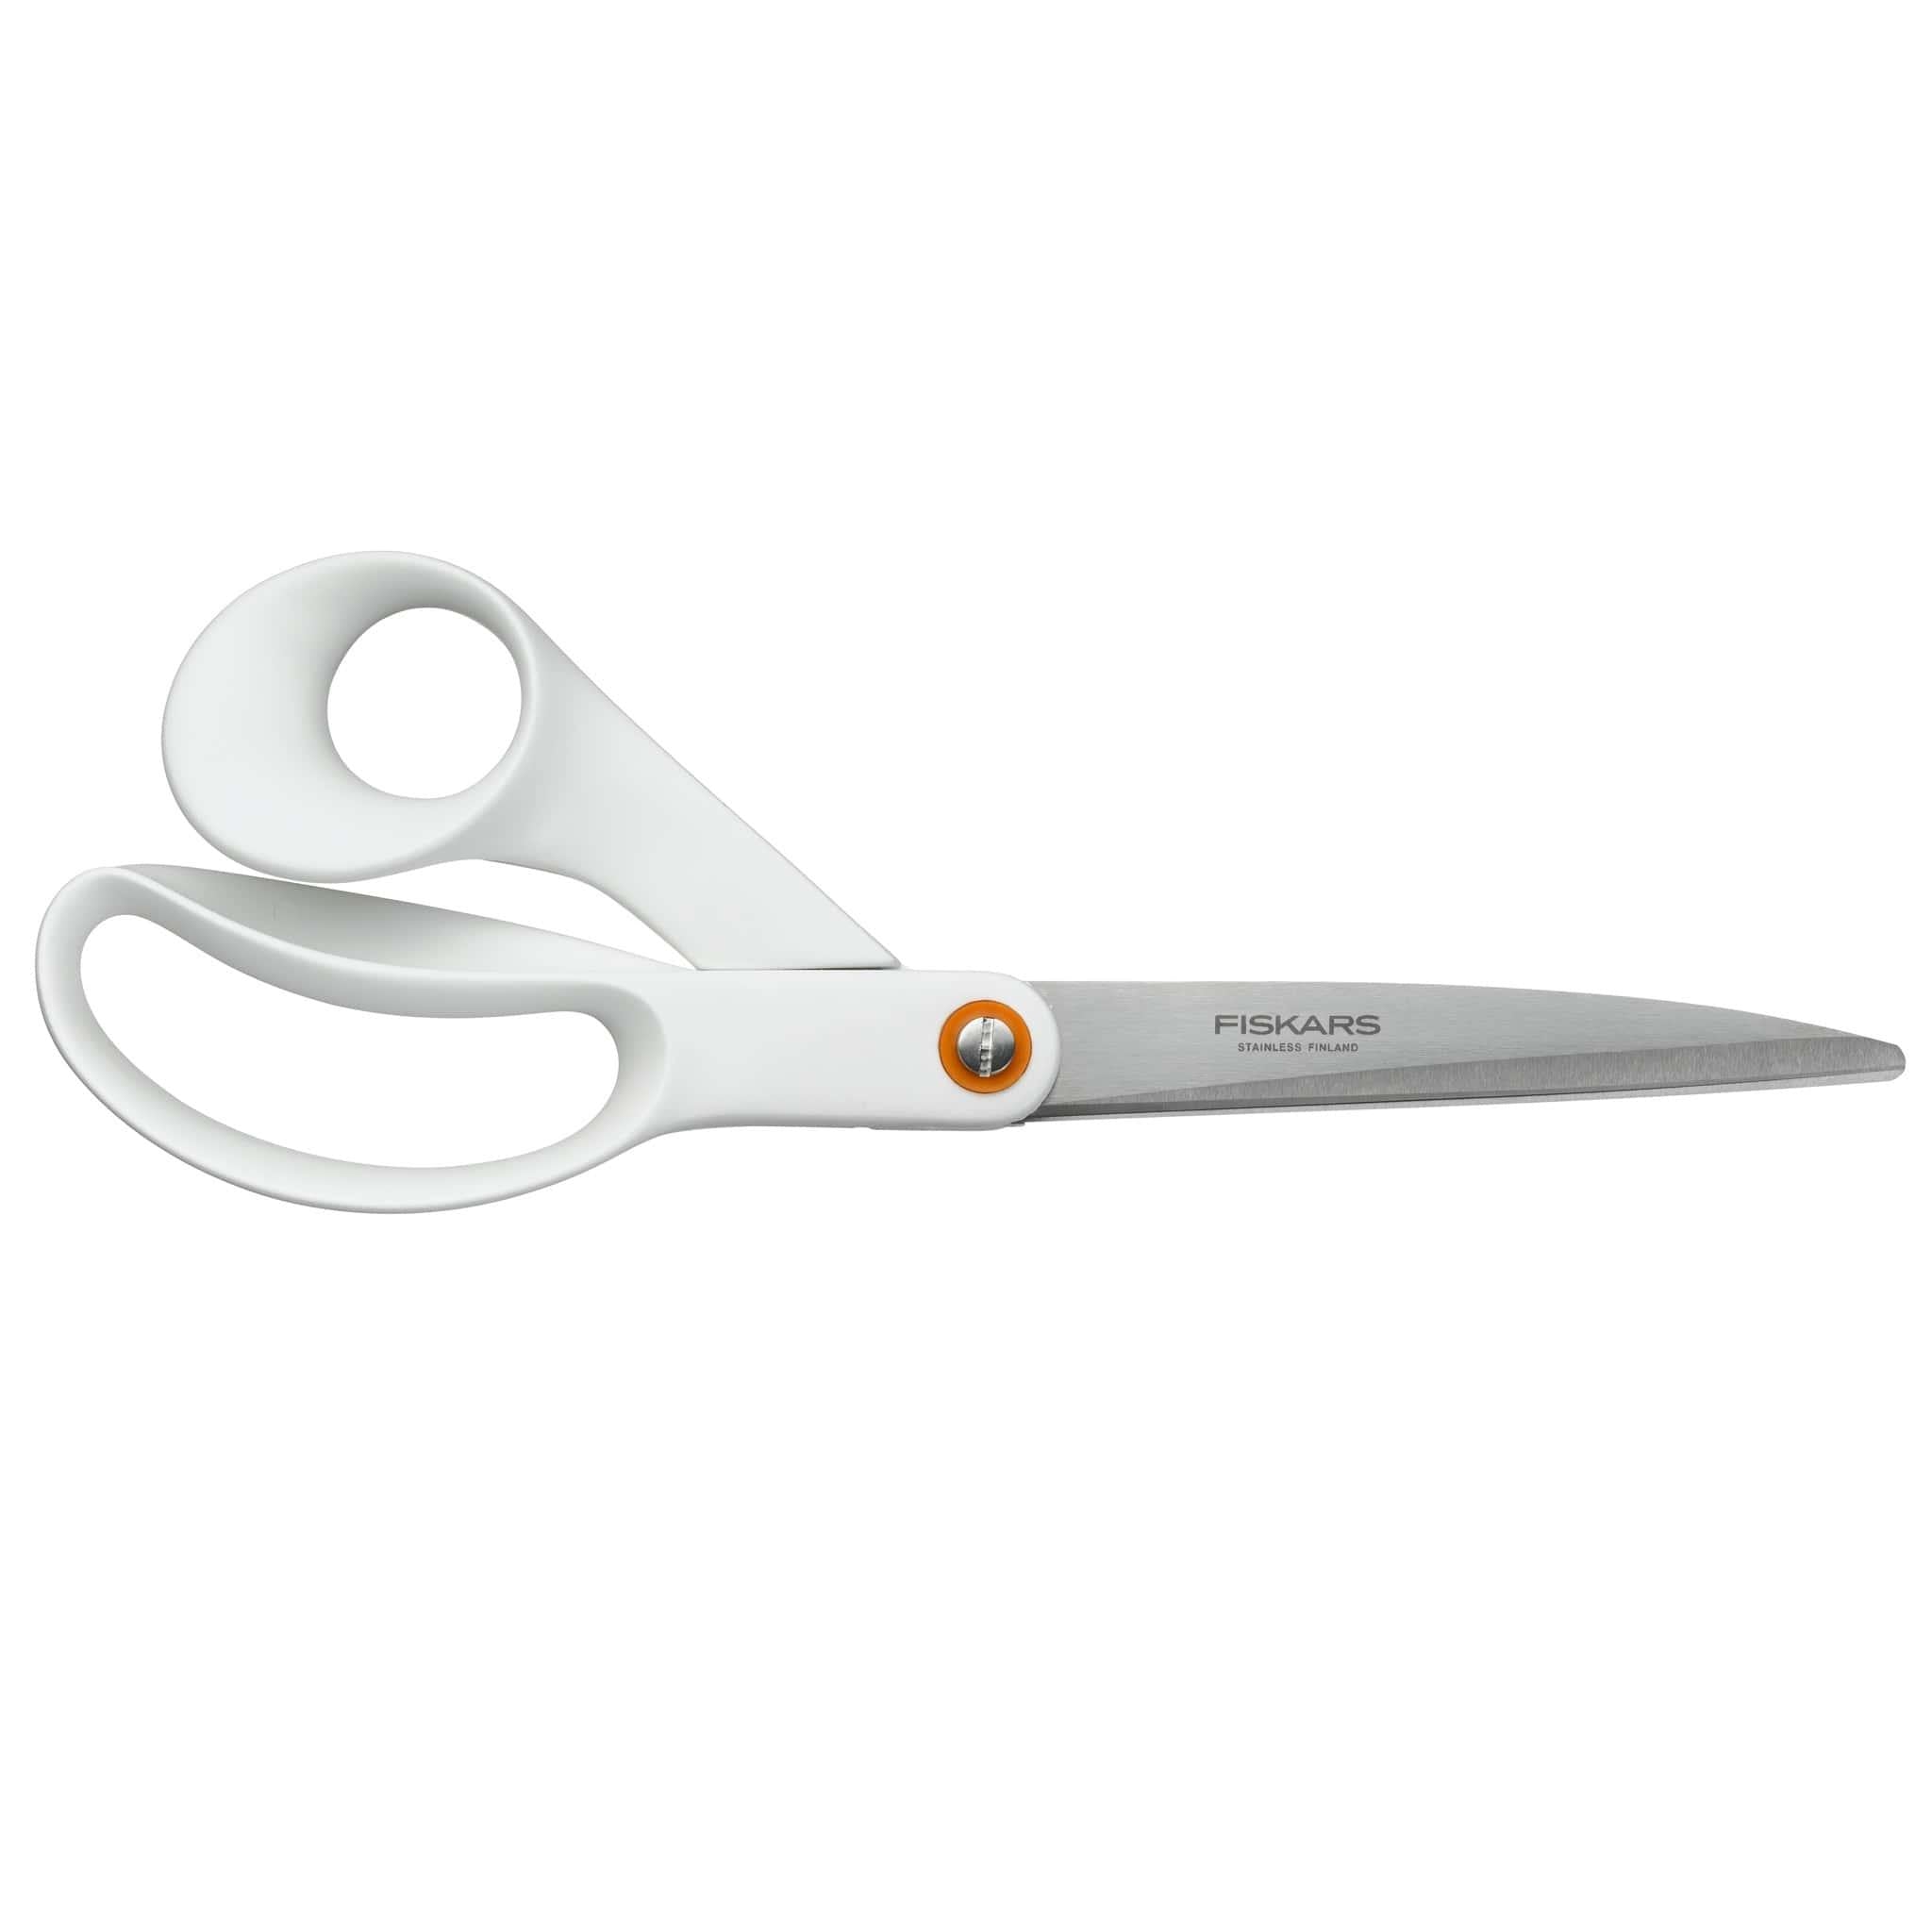 Fiskars Functional Form GeneralPurpose Scissors White (21cm/8.25in)